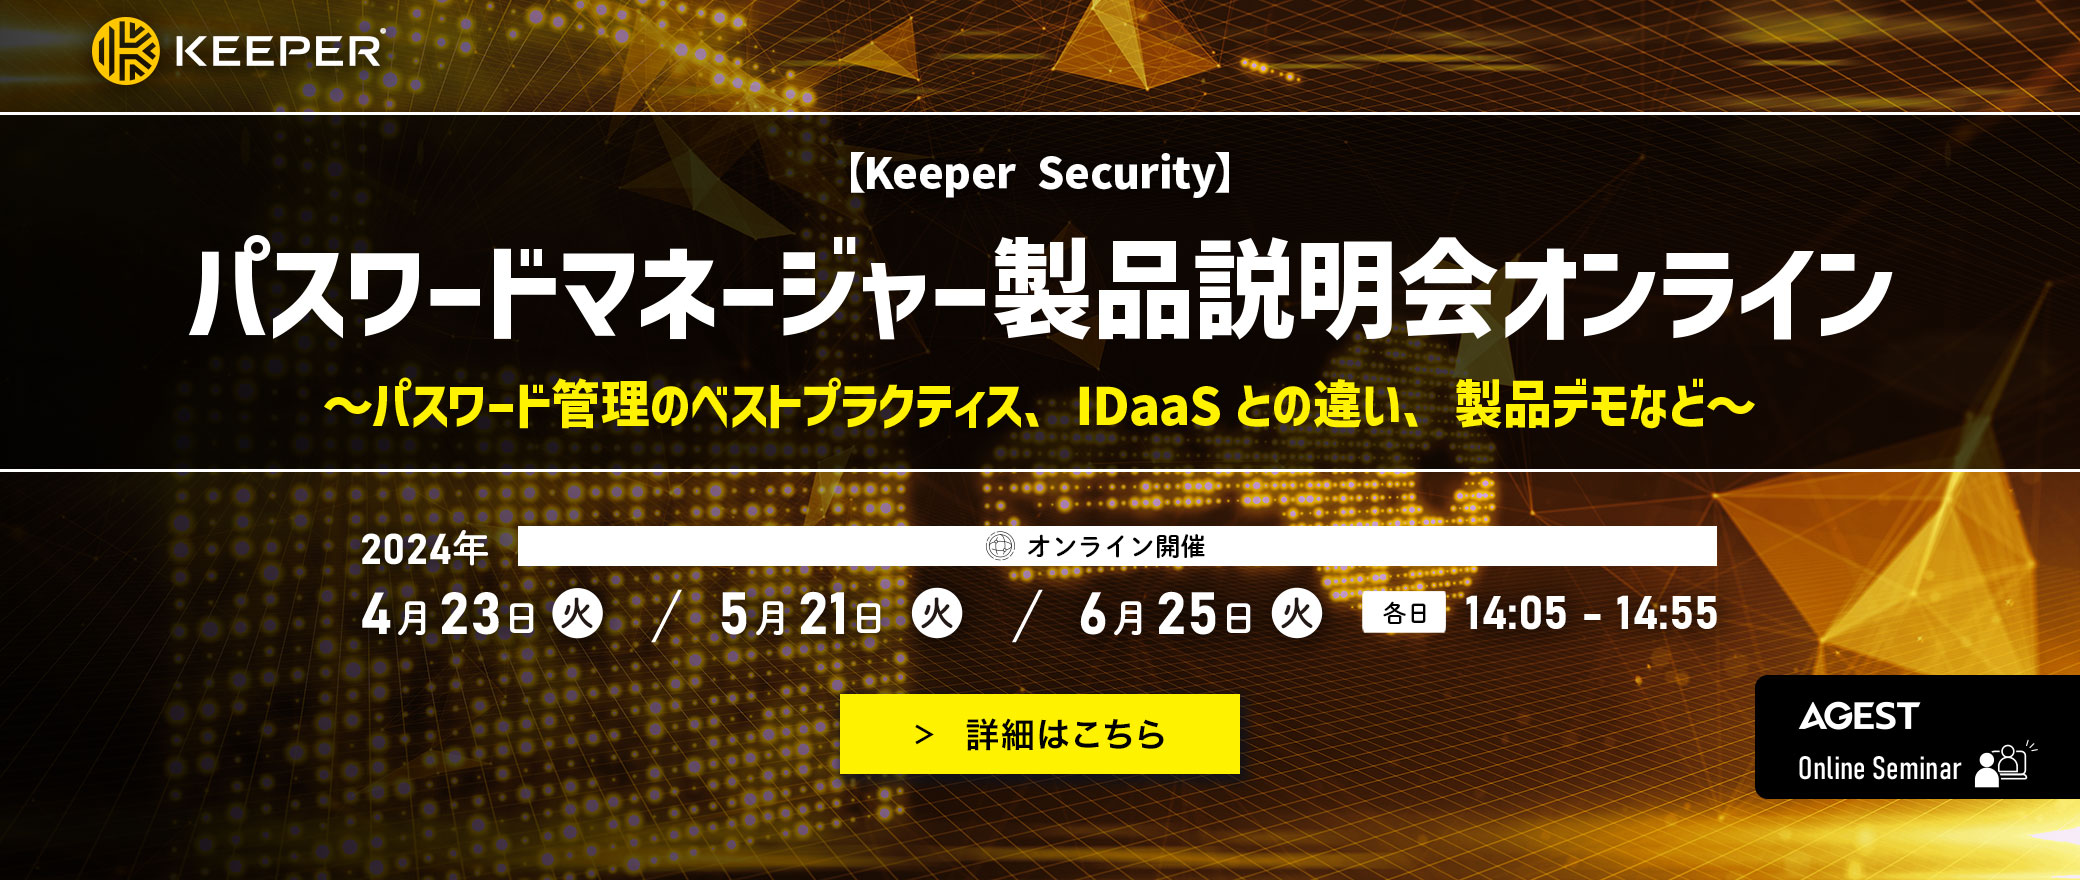 【Keeper Security】パスワードマネージャー製品説明会オンライン開催のお知らせ